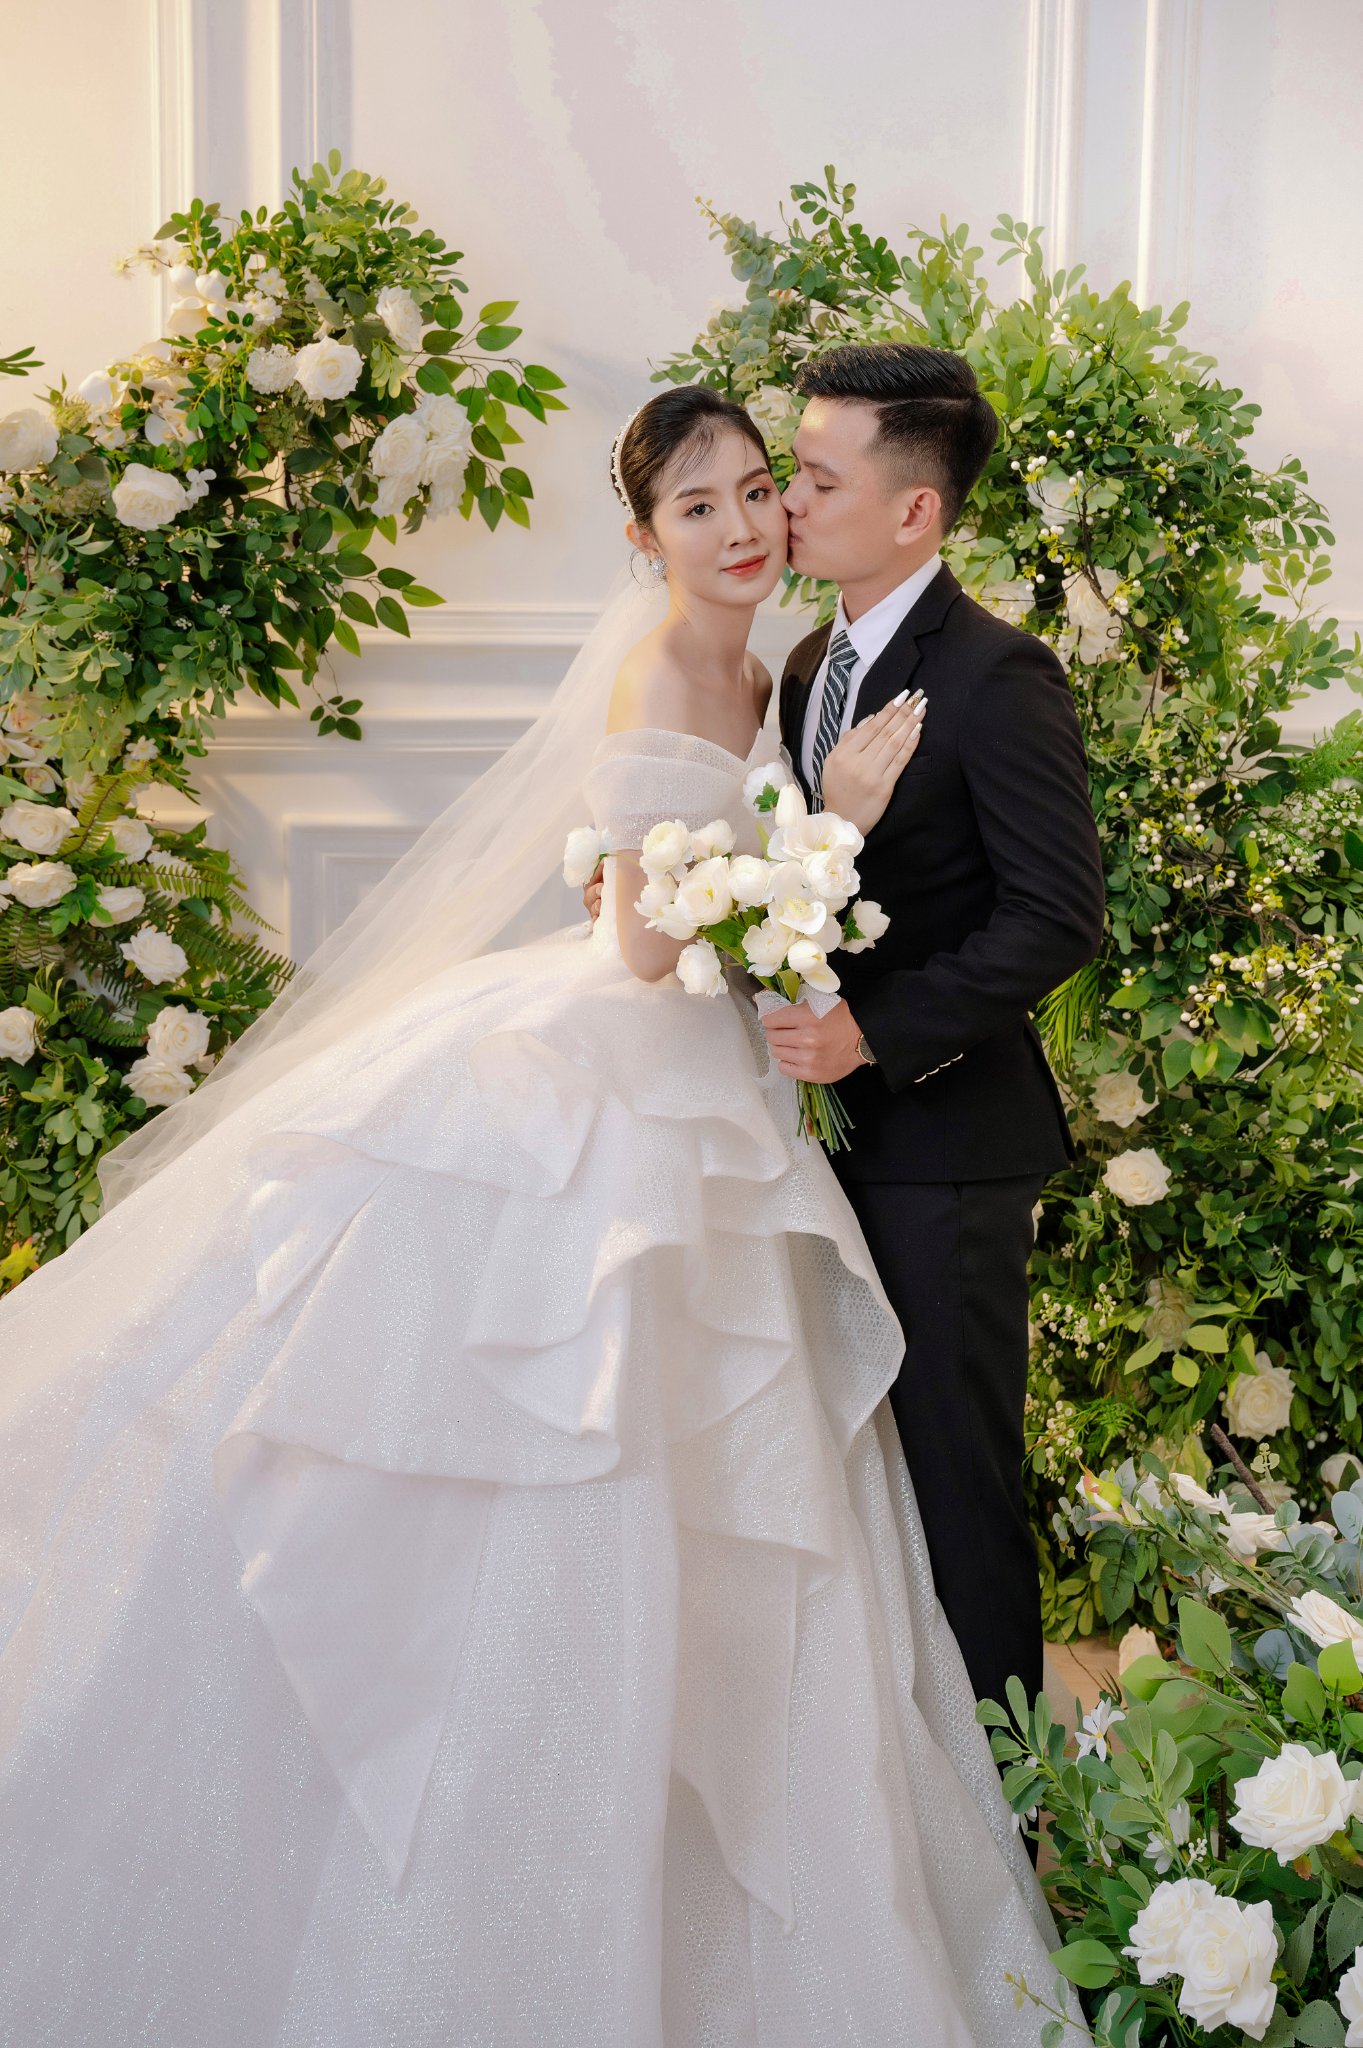 Top 10 studio chụp ảnh cưới đẳng cấp tại Hồ Chí Minh